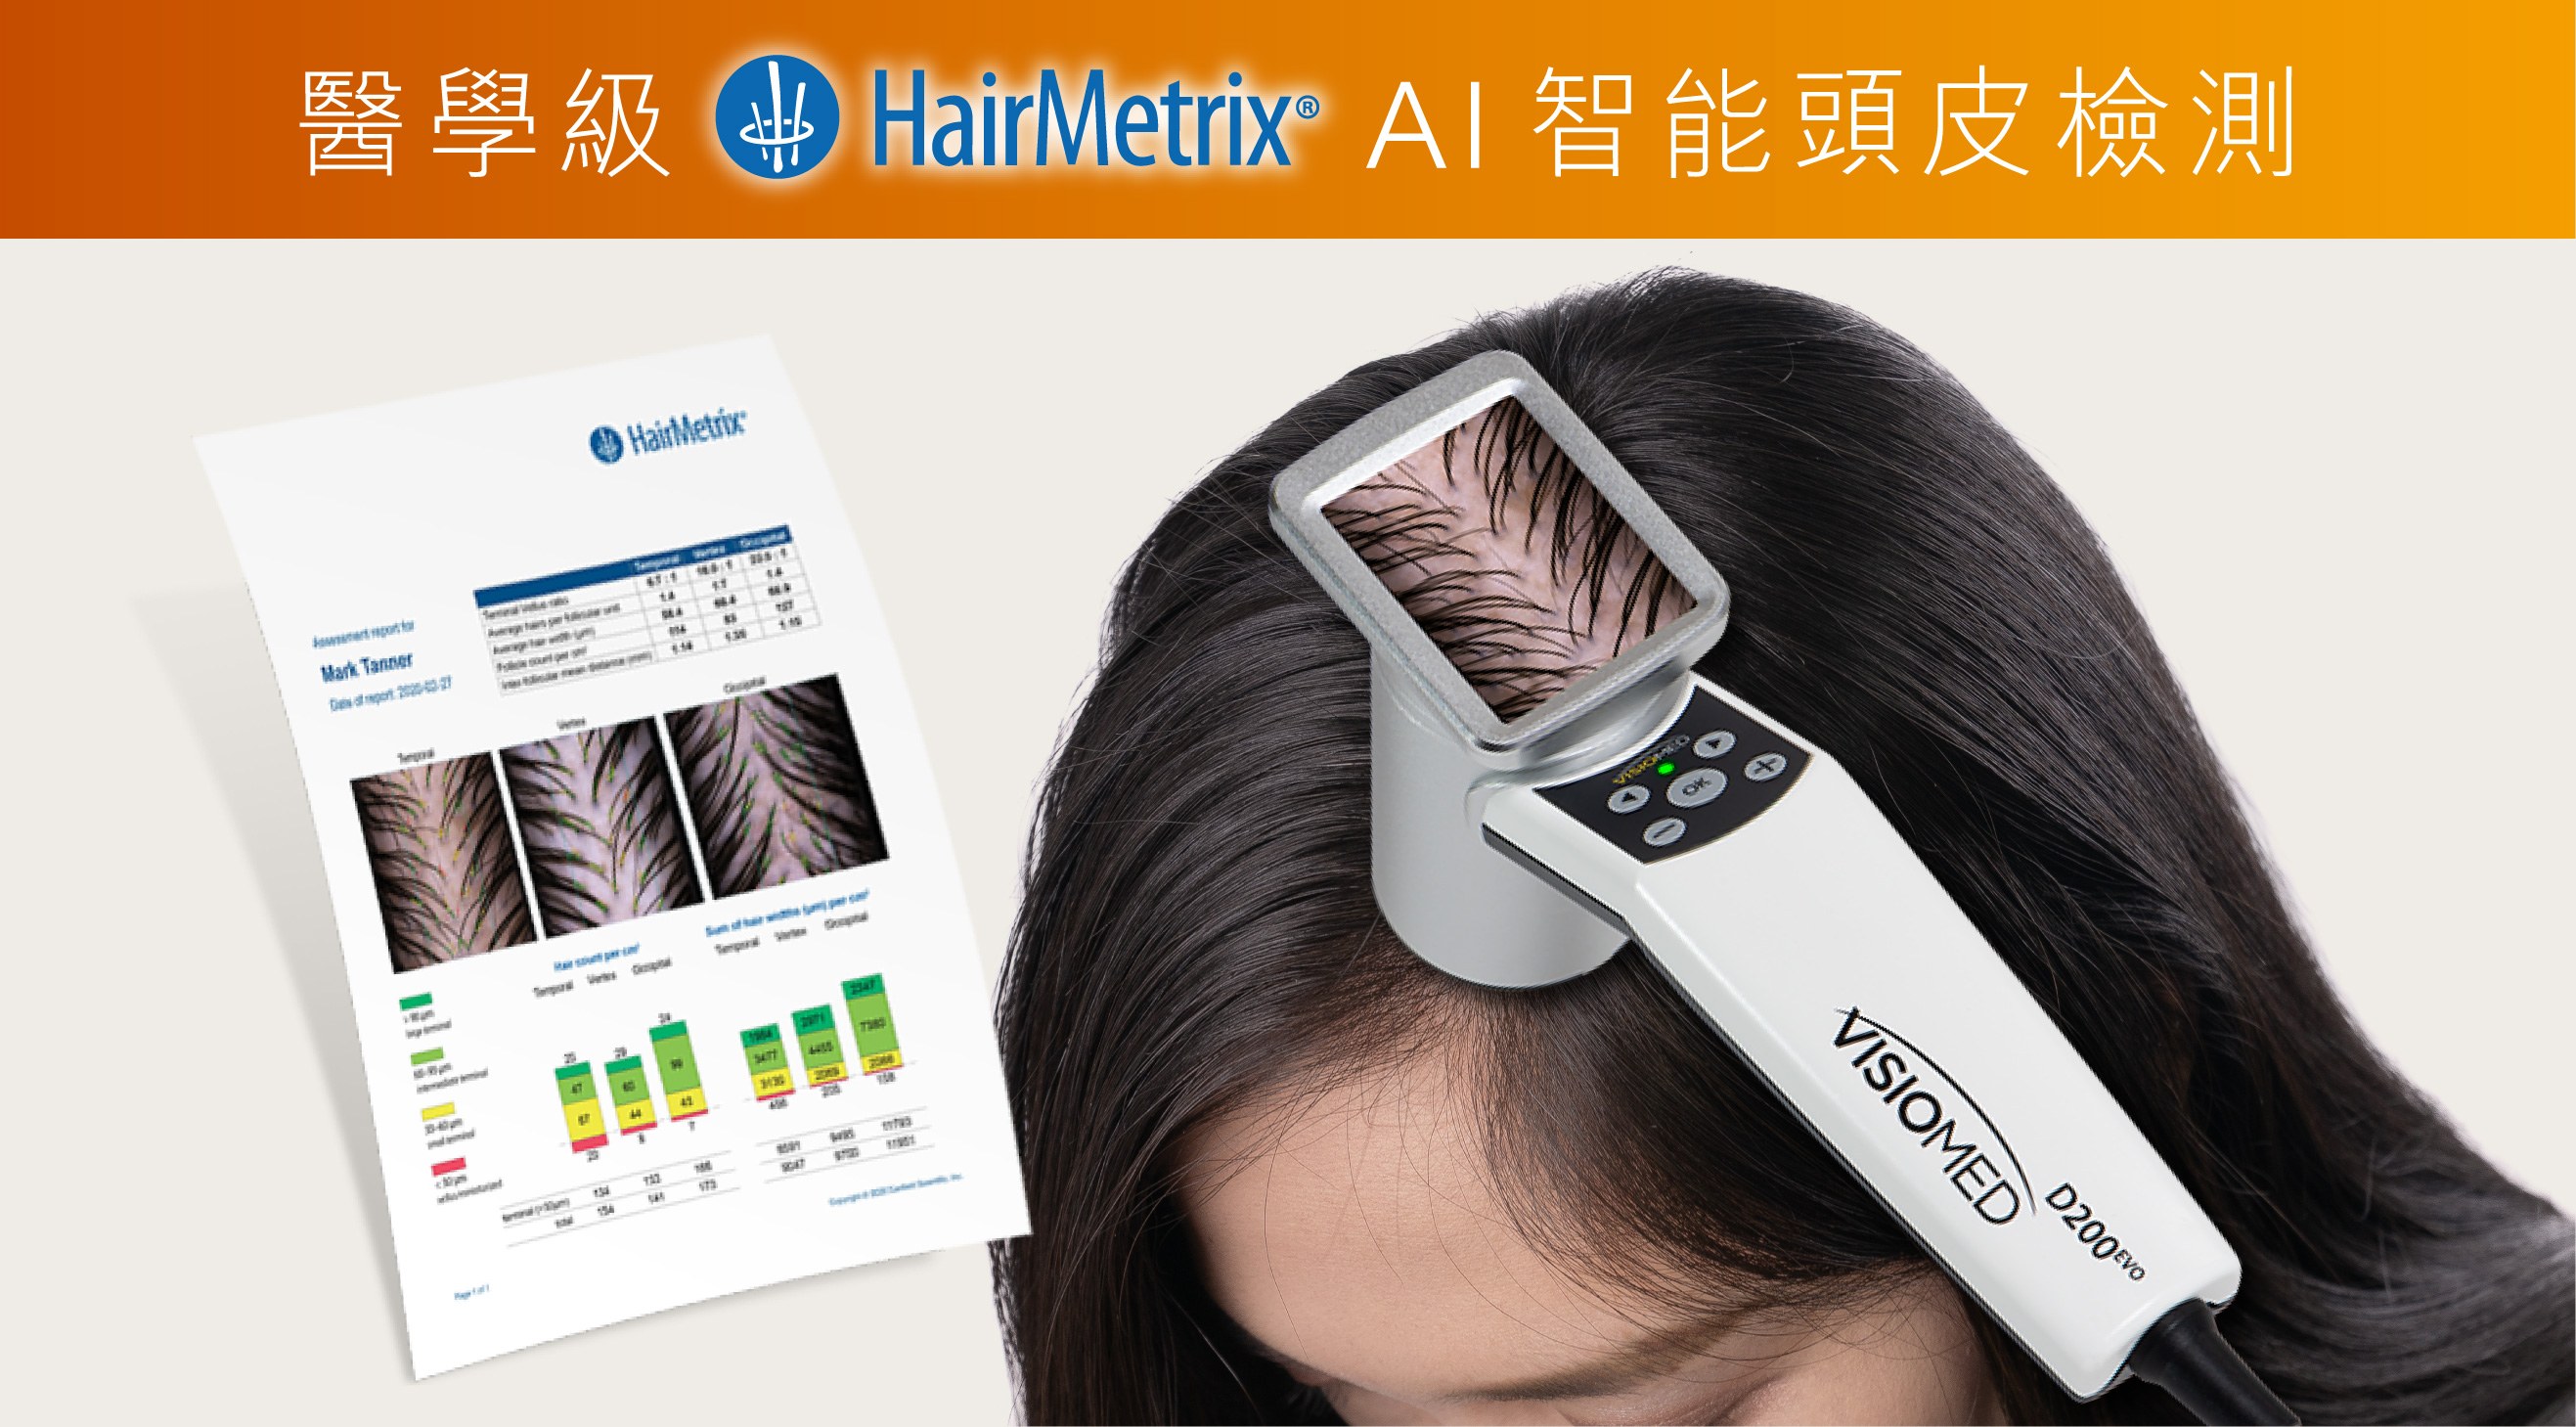 +medispa 醫學級 HairMetrix AI智能頭皮檢測